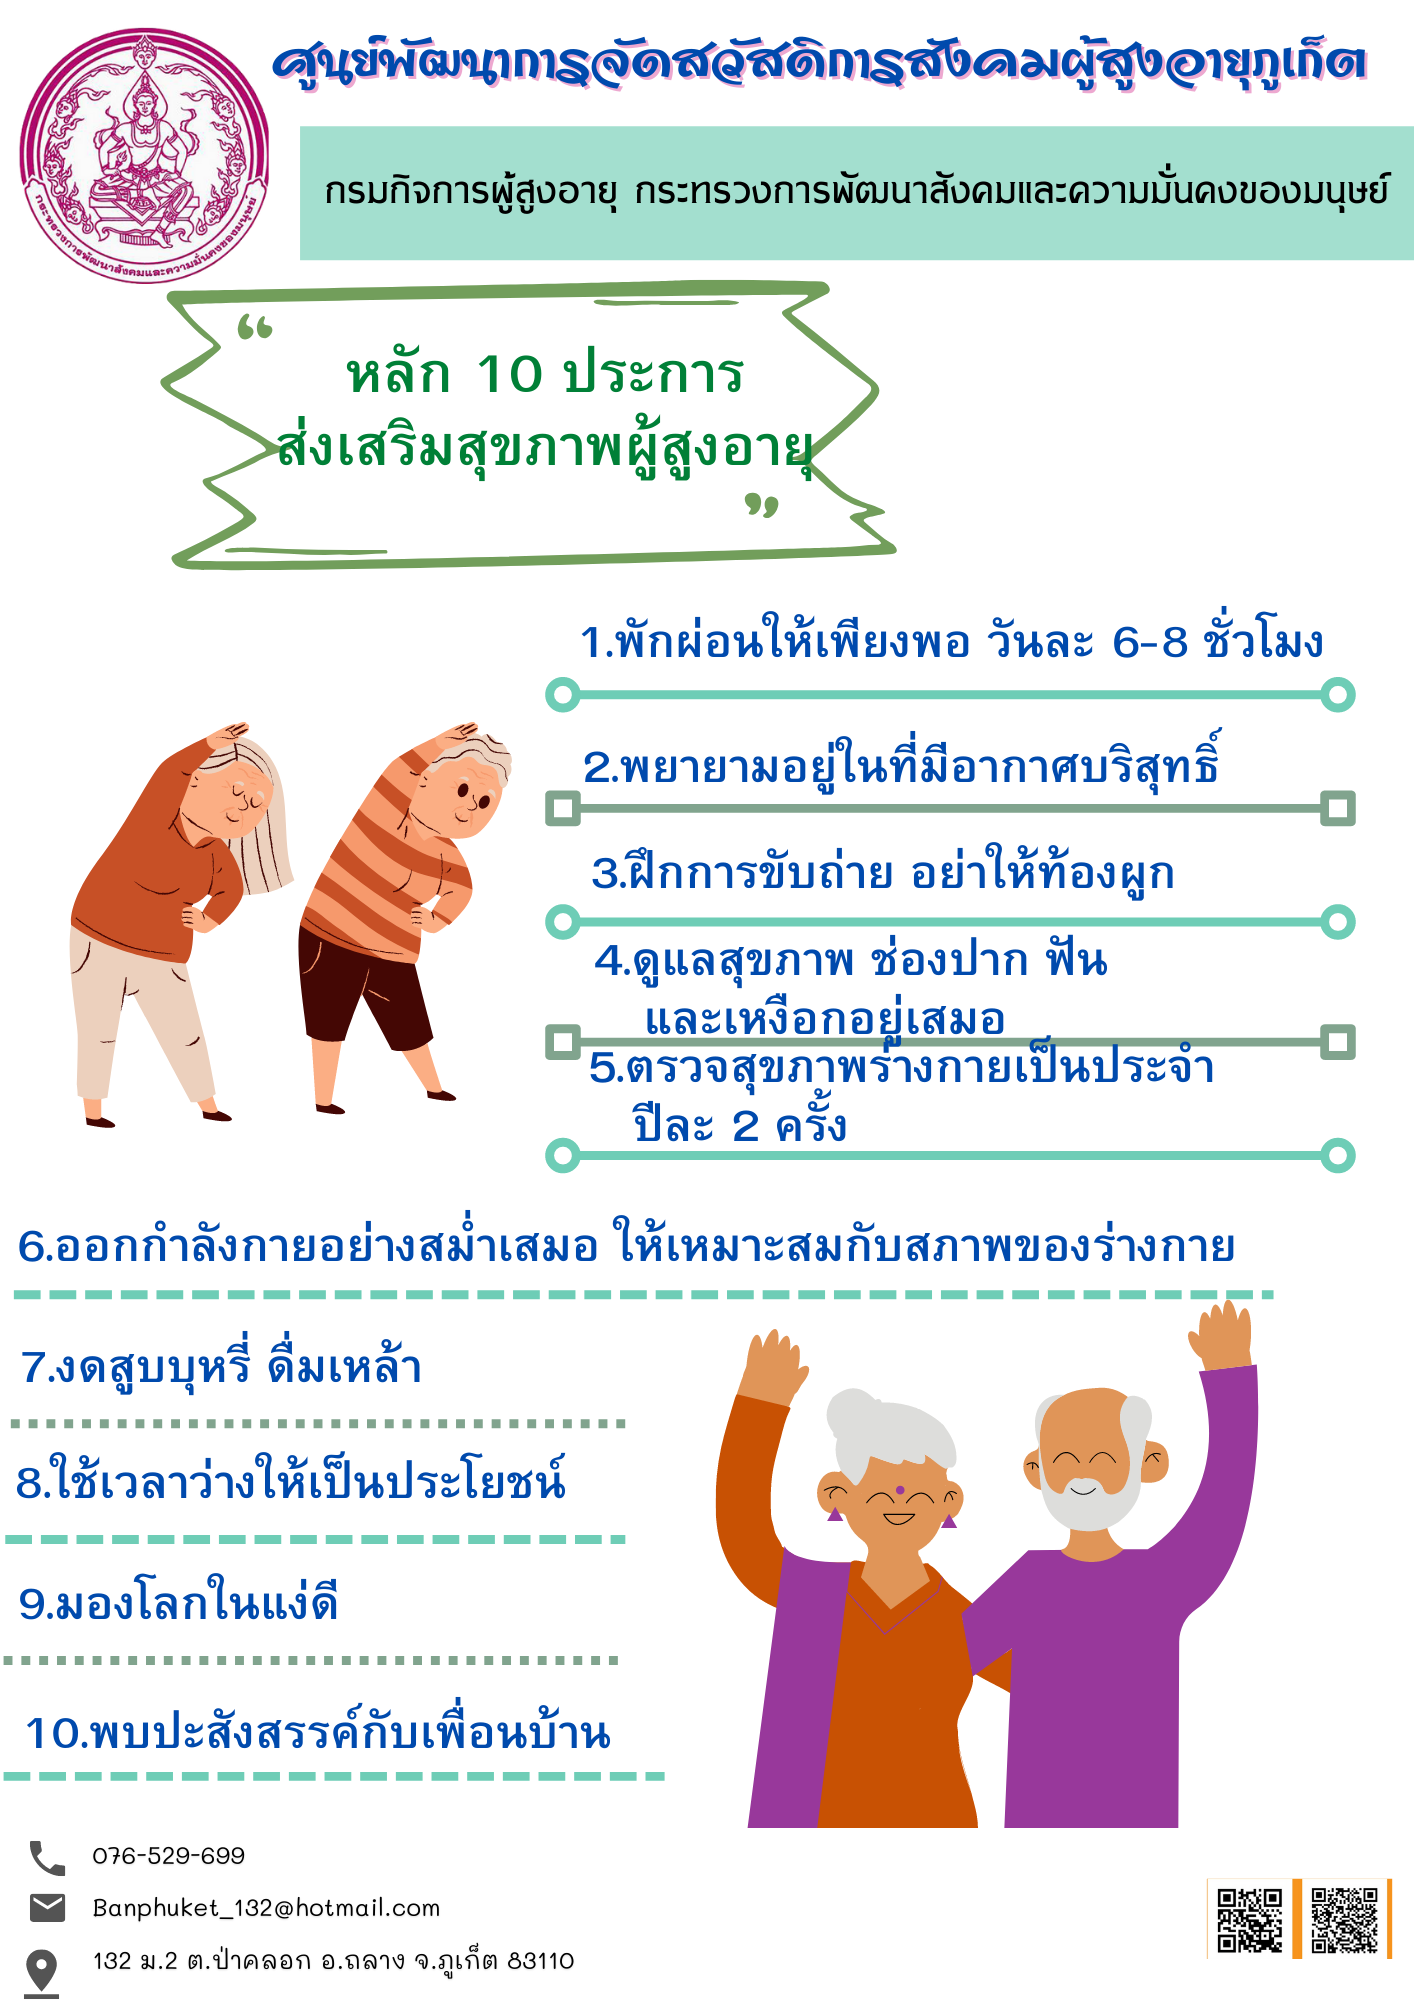 หลัก 10 ประการ ส่งเสริมสุขภาพผู้สูงอายุ